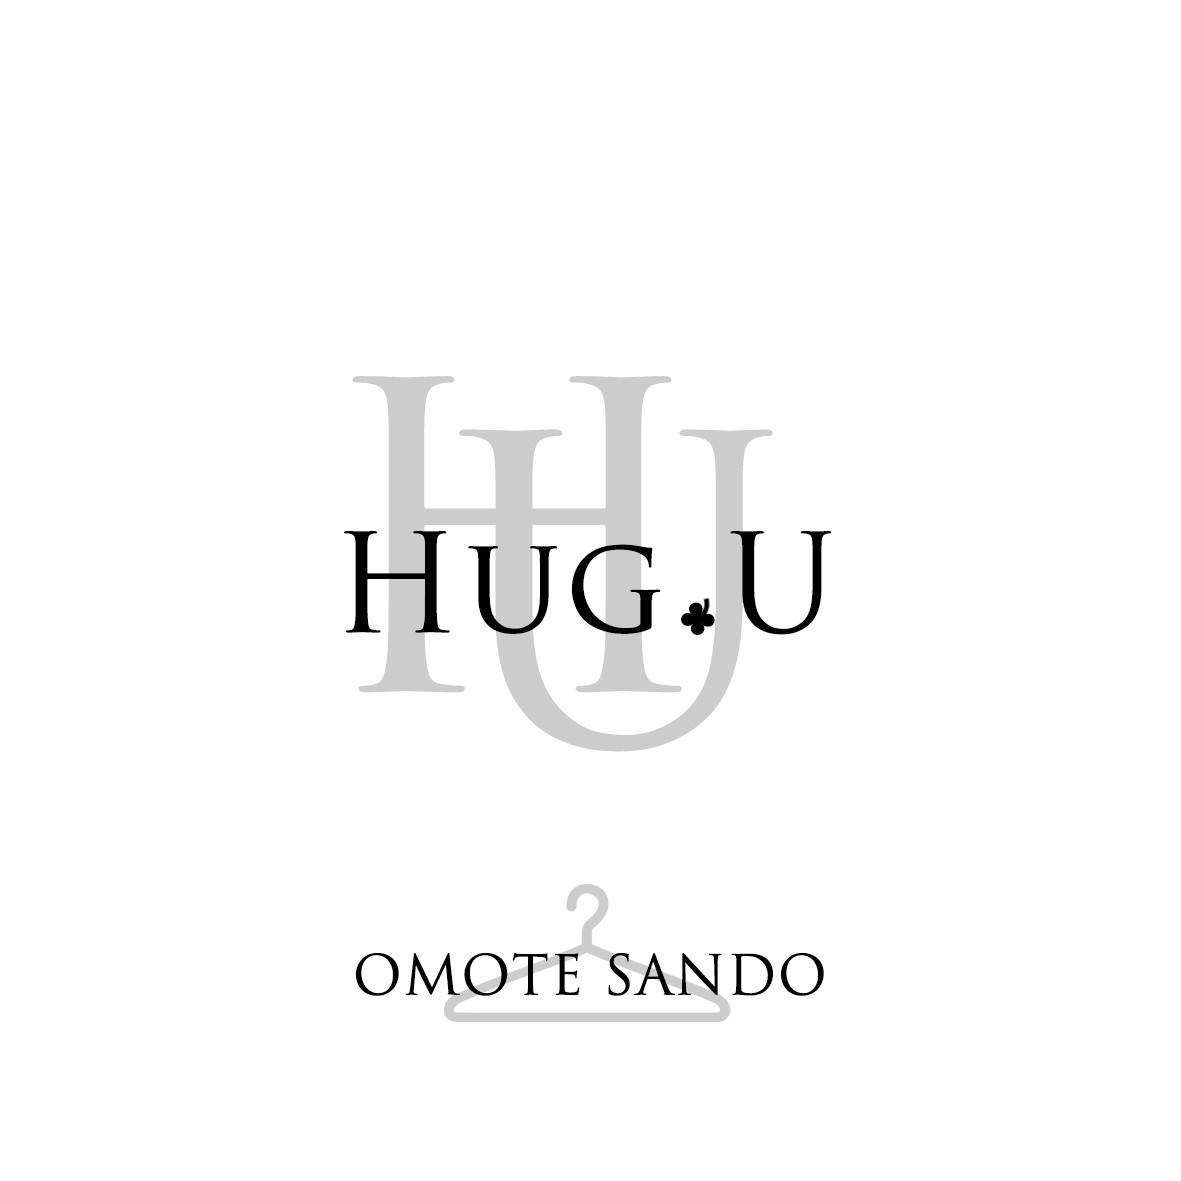 HUG Uロゴ